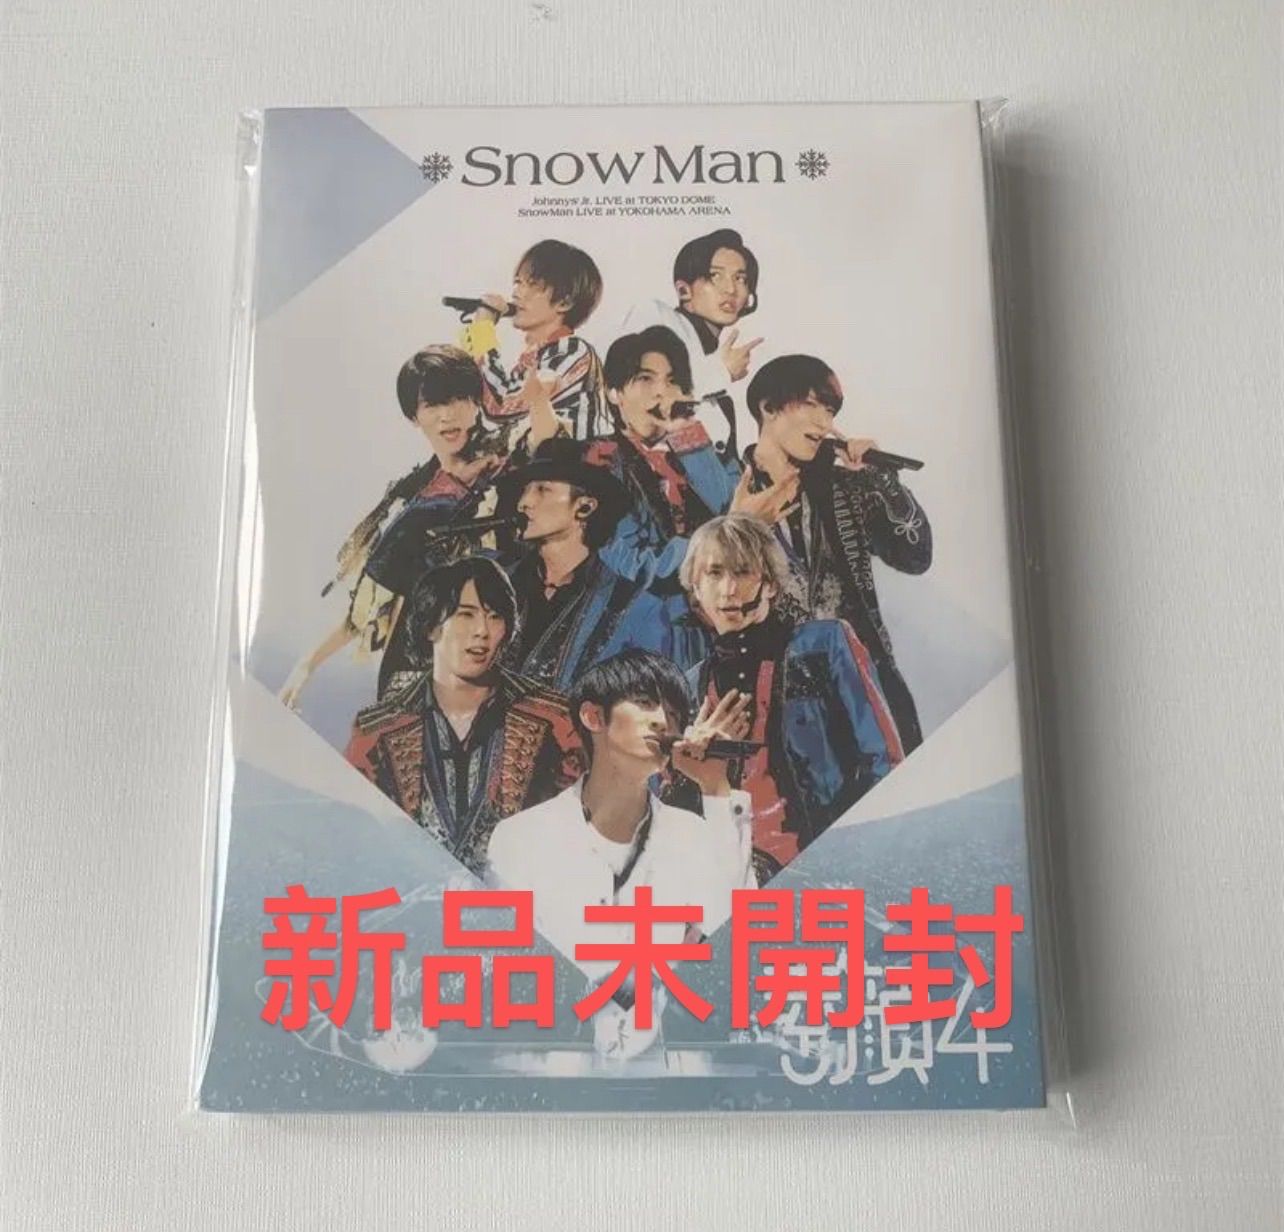 お歳暮 素顔4 SnowMan DVD ミュージック - mahaayush.in